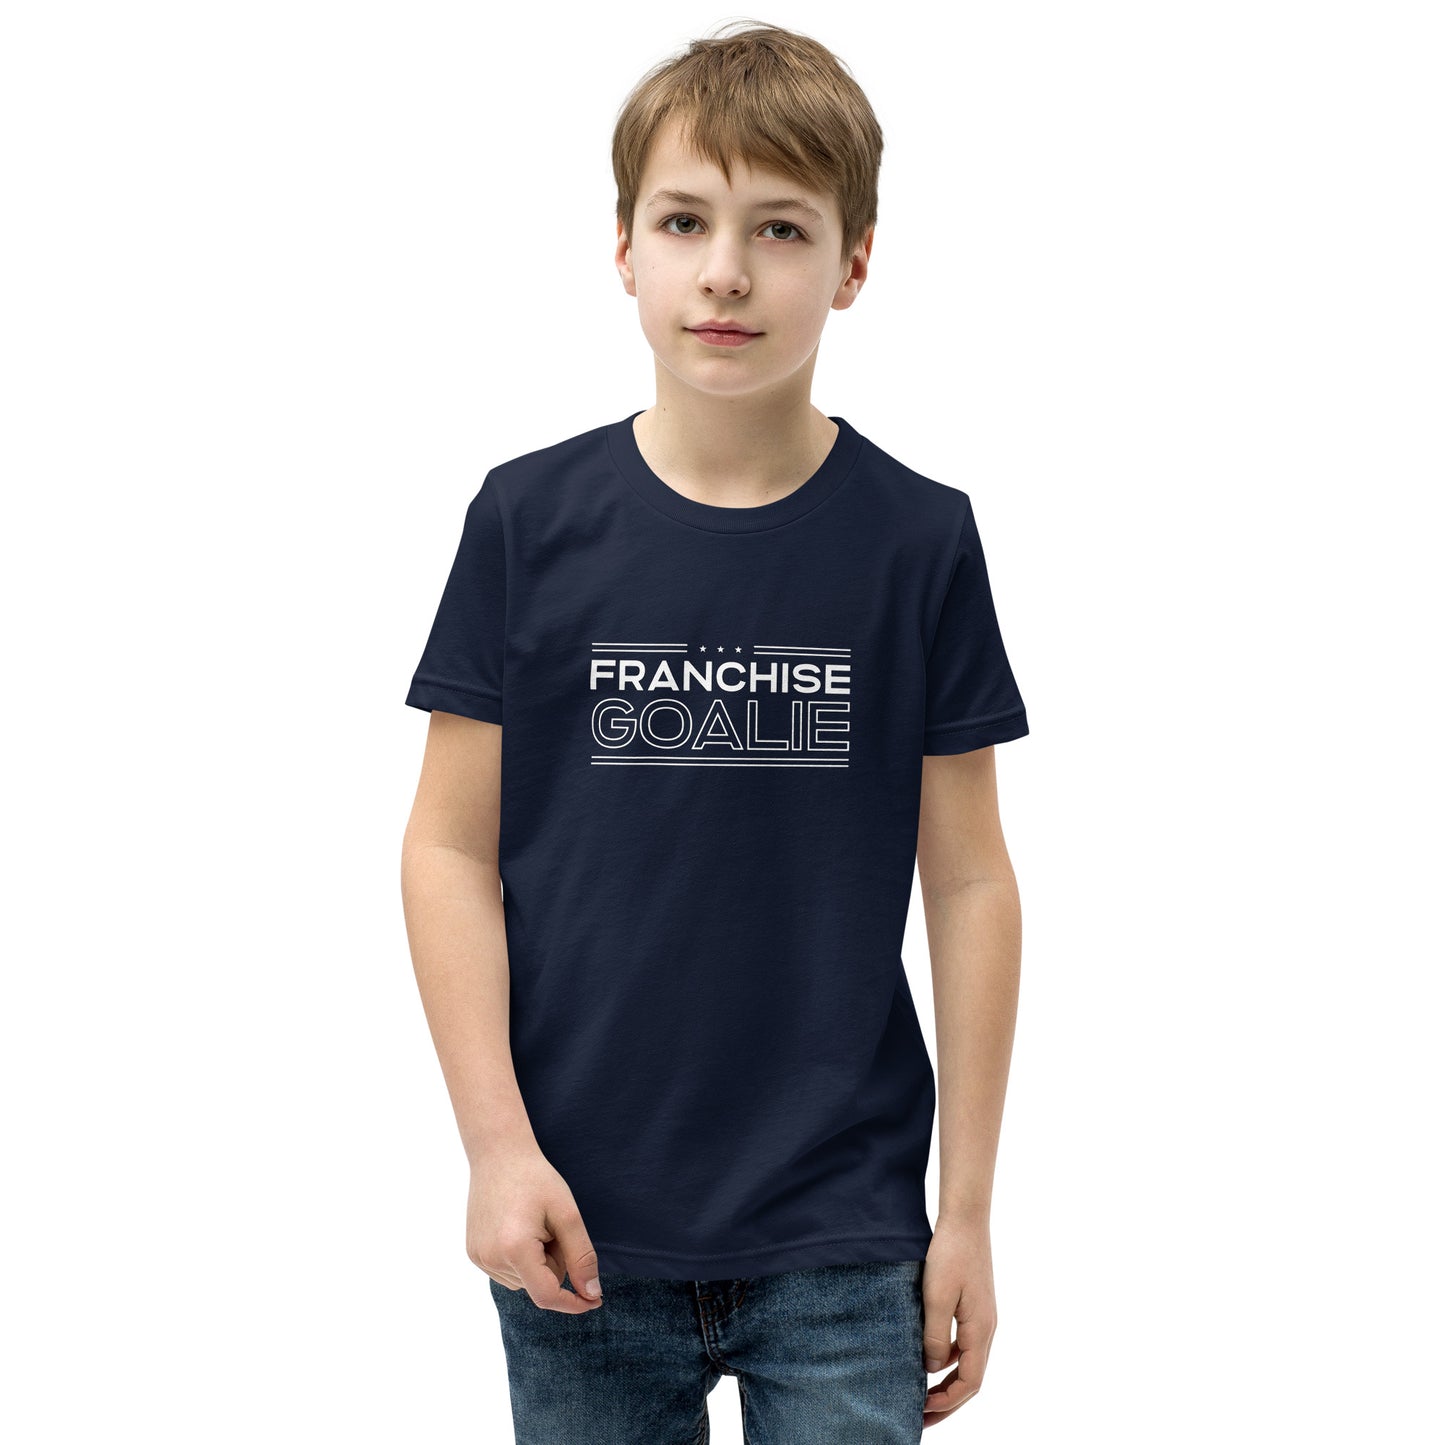 Franchise Goalie Youth T-Shirt